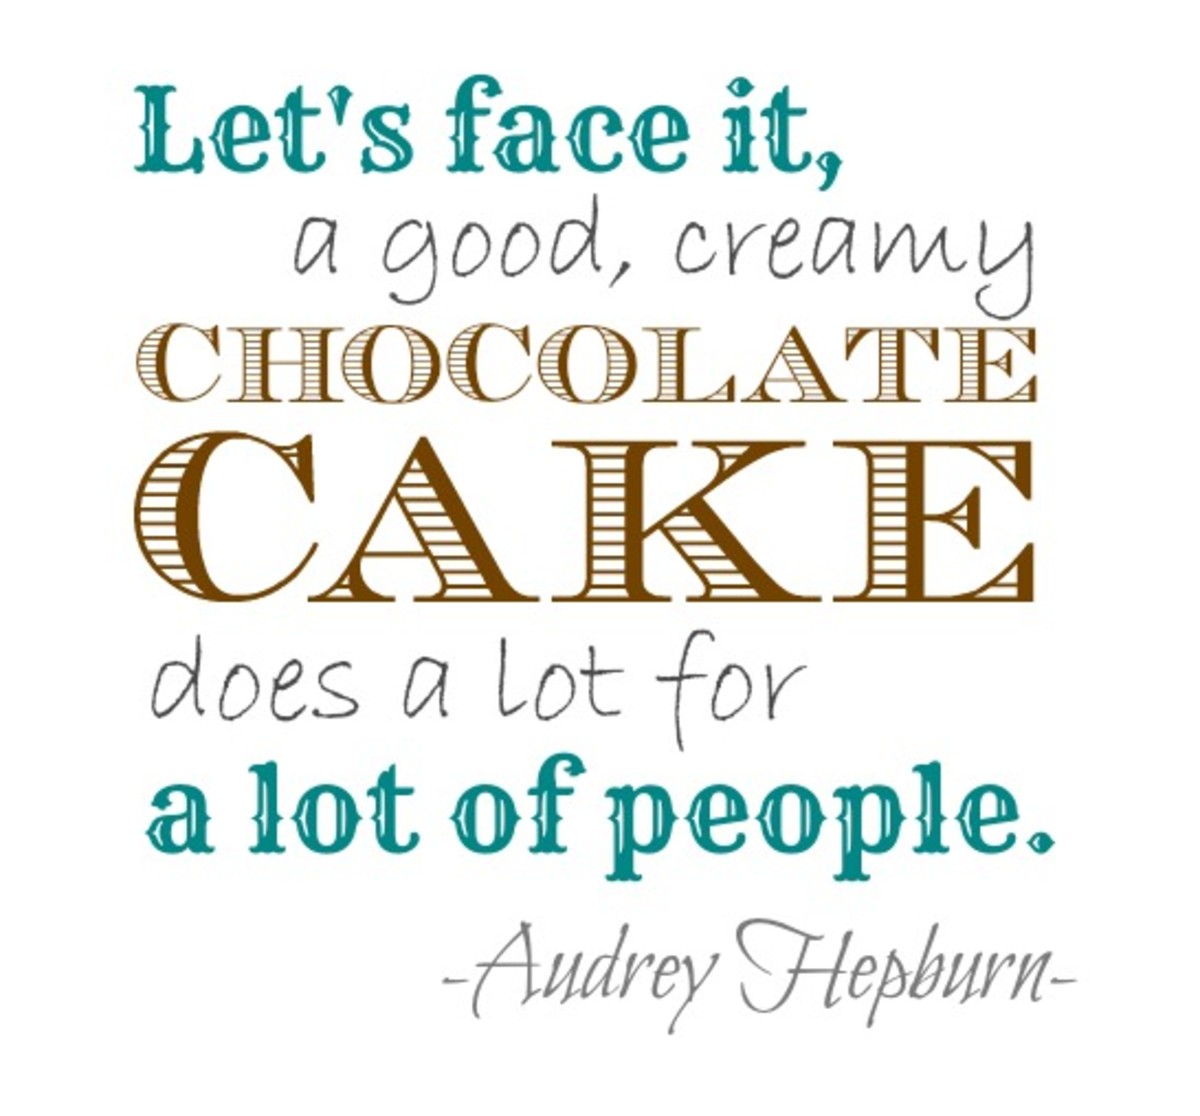 So true, Audrey!